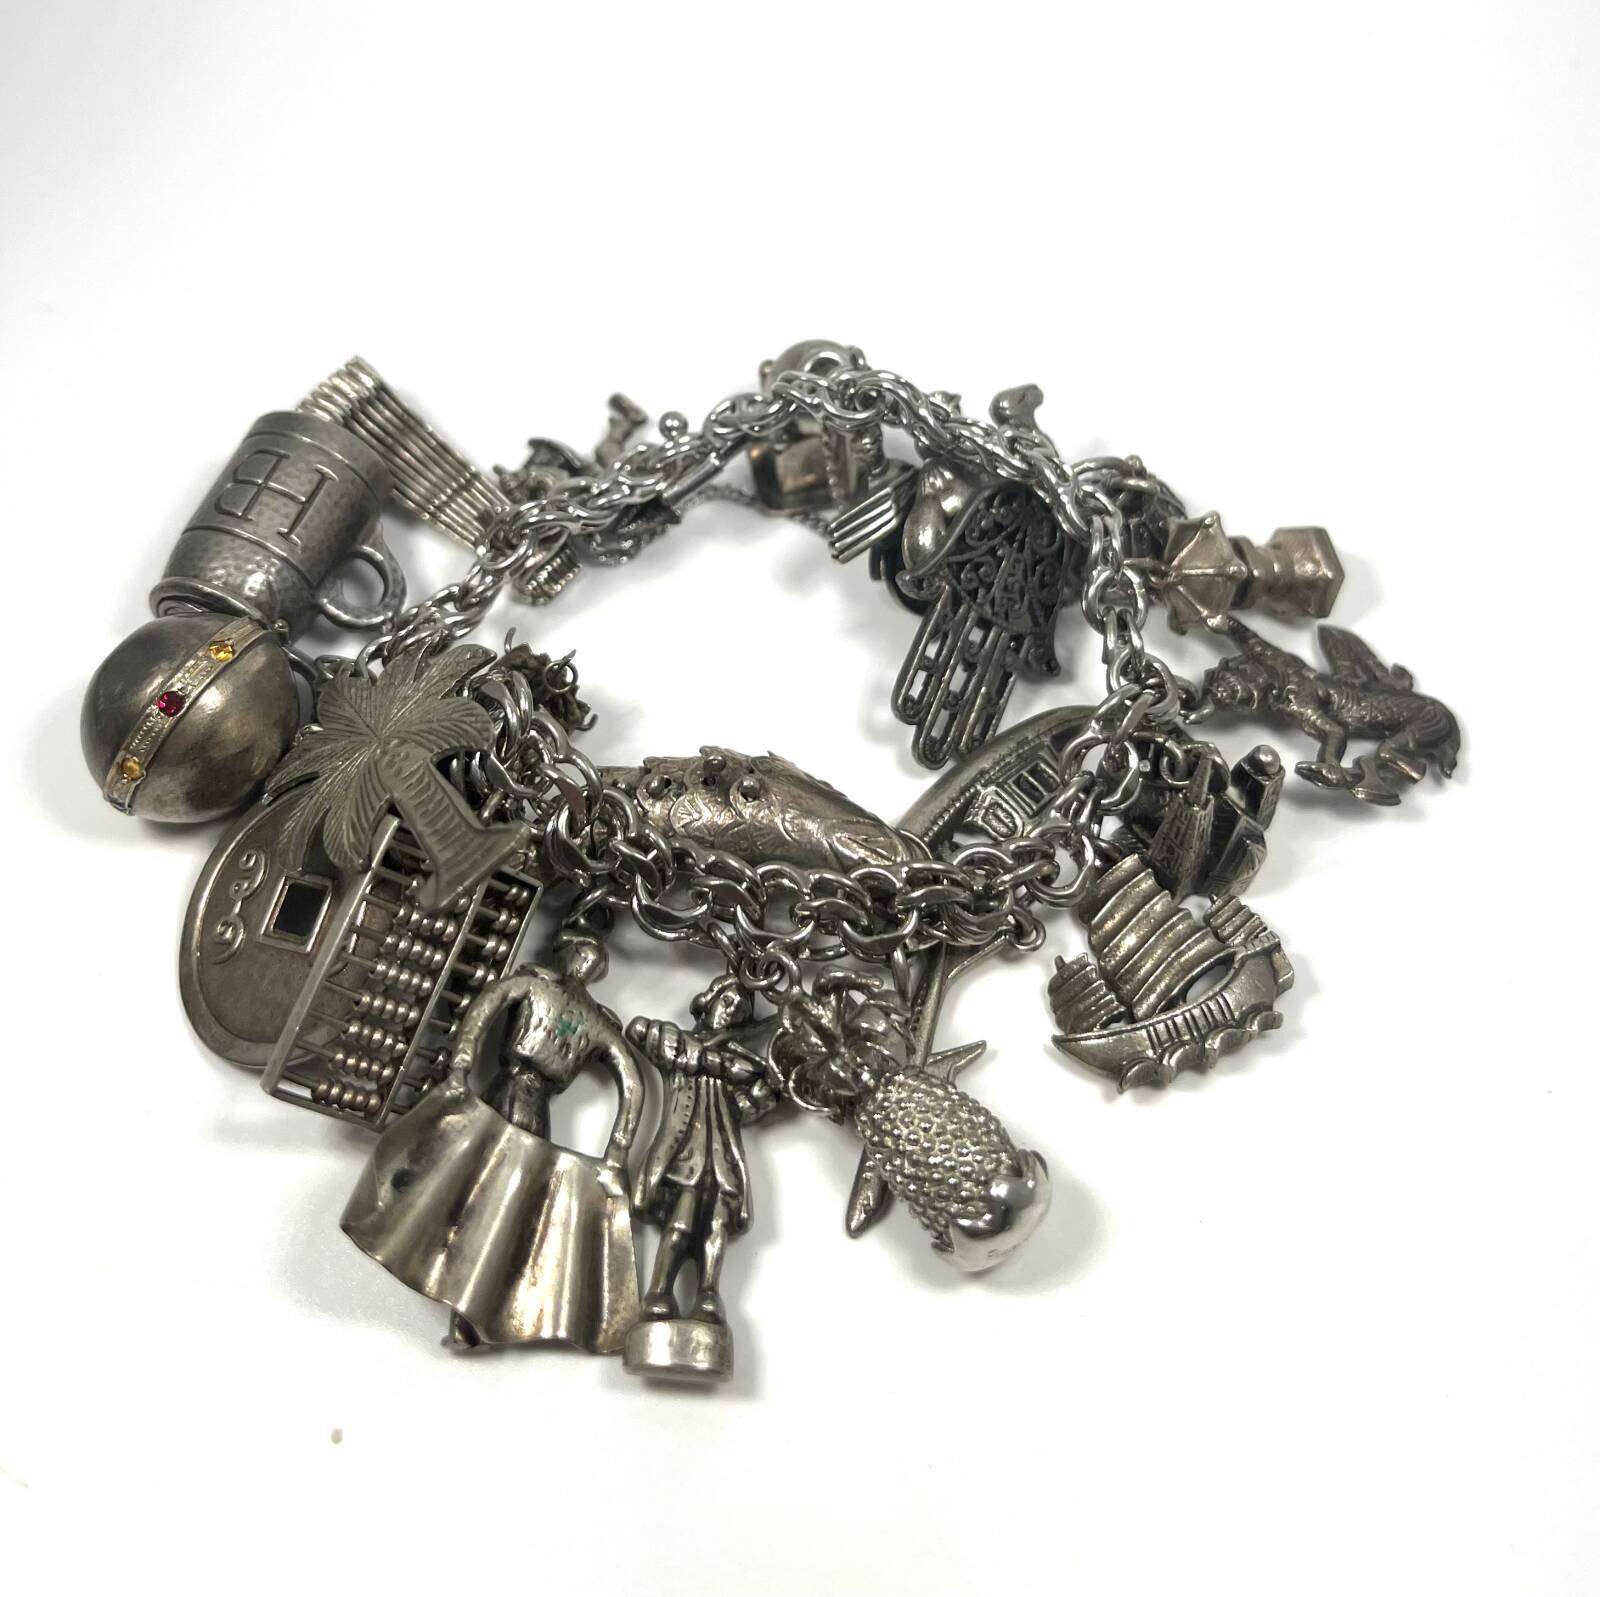 Antique Charm Bracelet Sterling Silver 925 - image 1